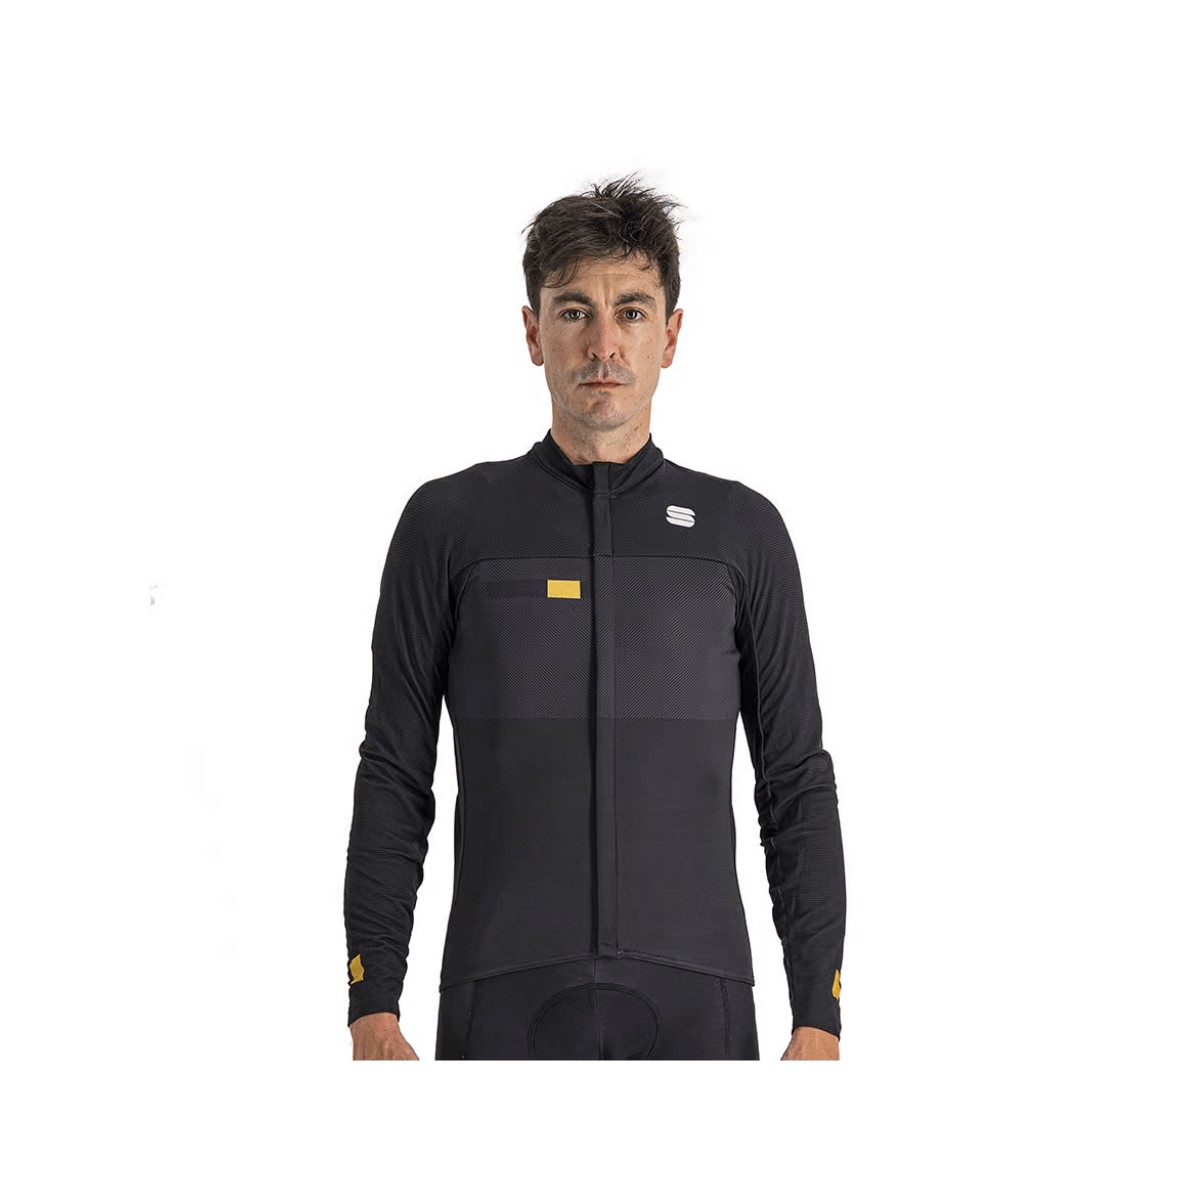 Jersey preta de manga comprida esportiva BodyFit Pro térmica, Tamanho L